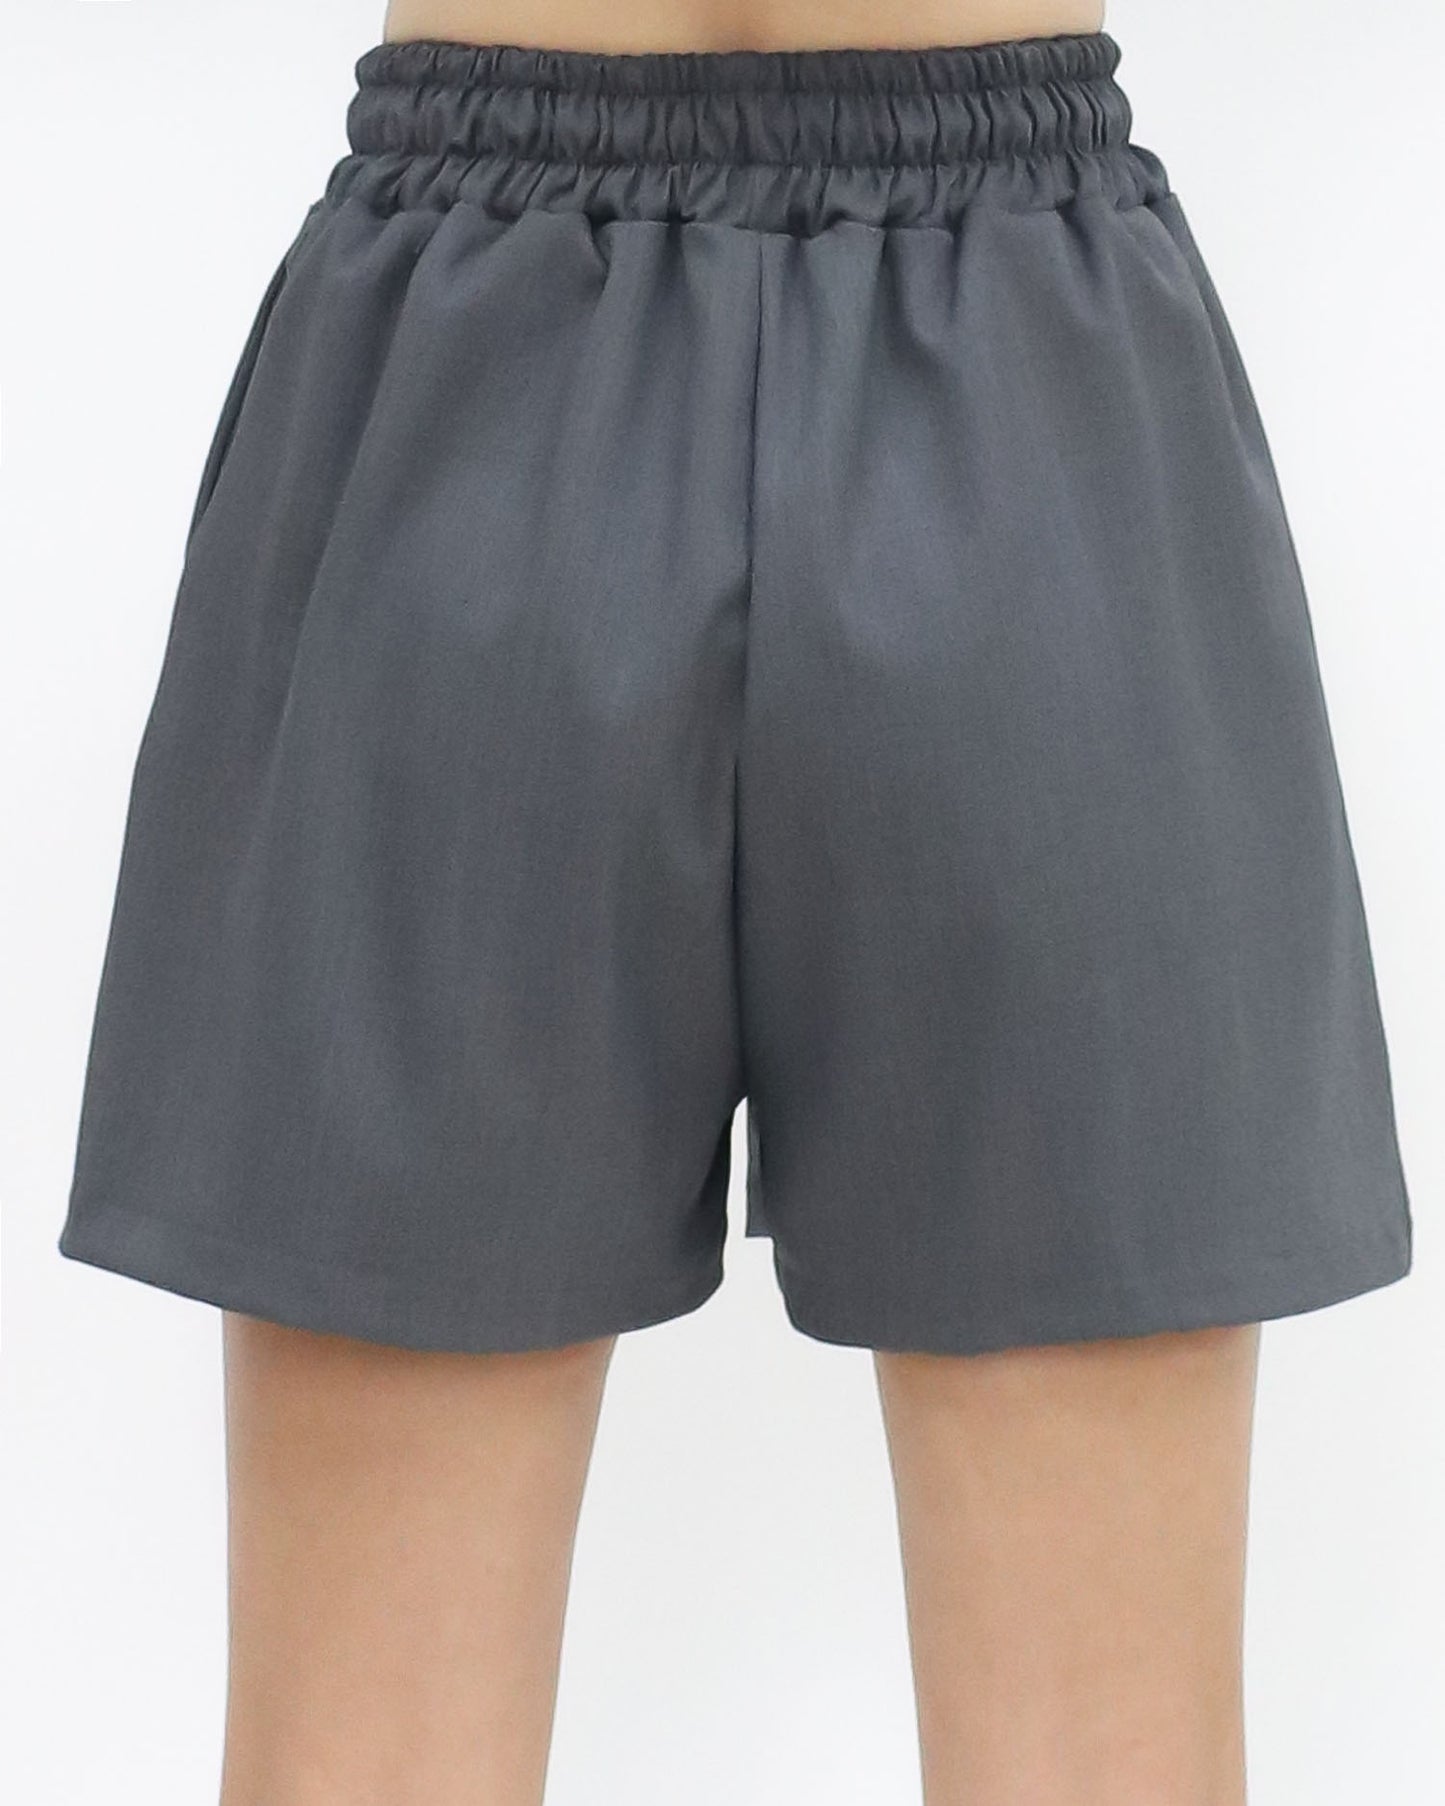 grey drawstring pockets shorts *pre-order*